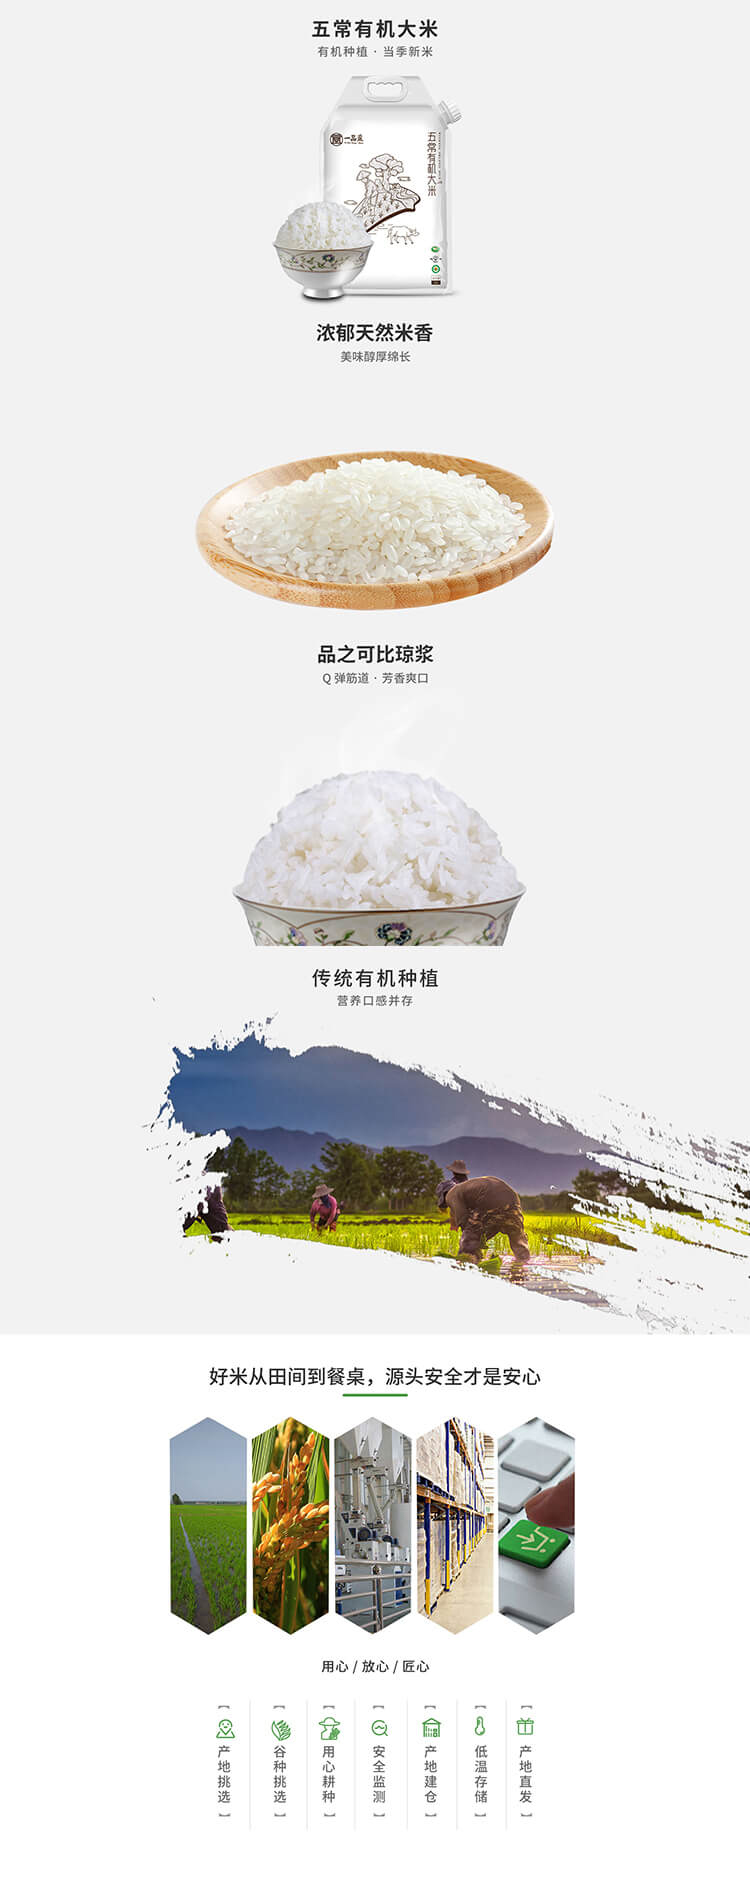 好吃的香米厂家_中国大米-深圳大谷米业有限公司